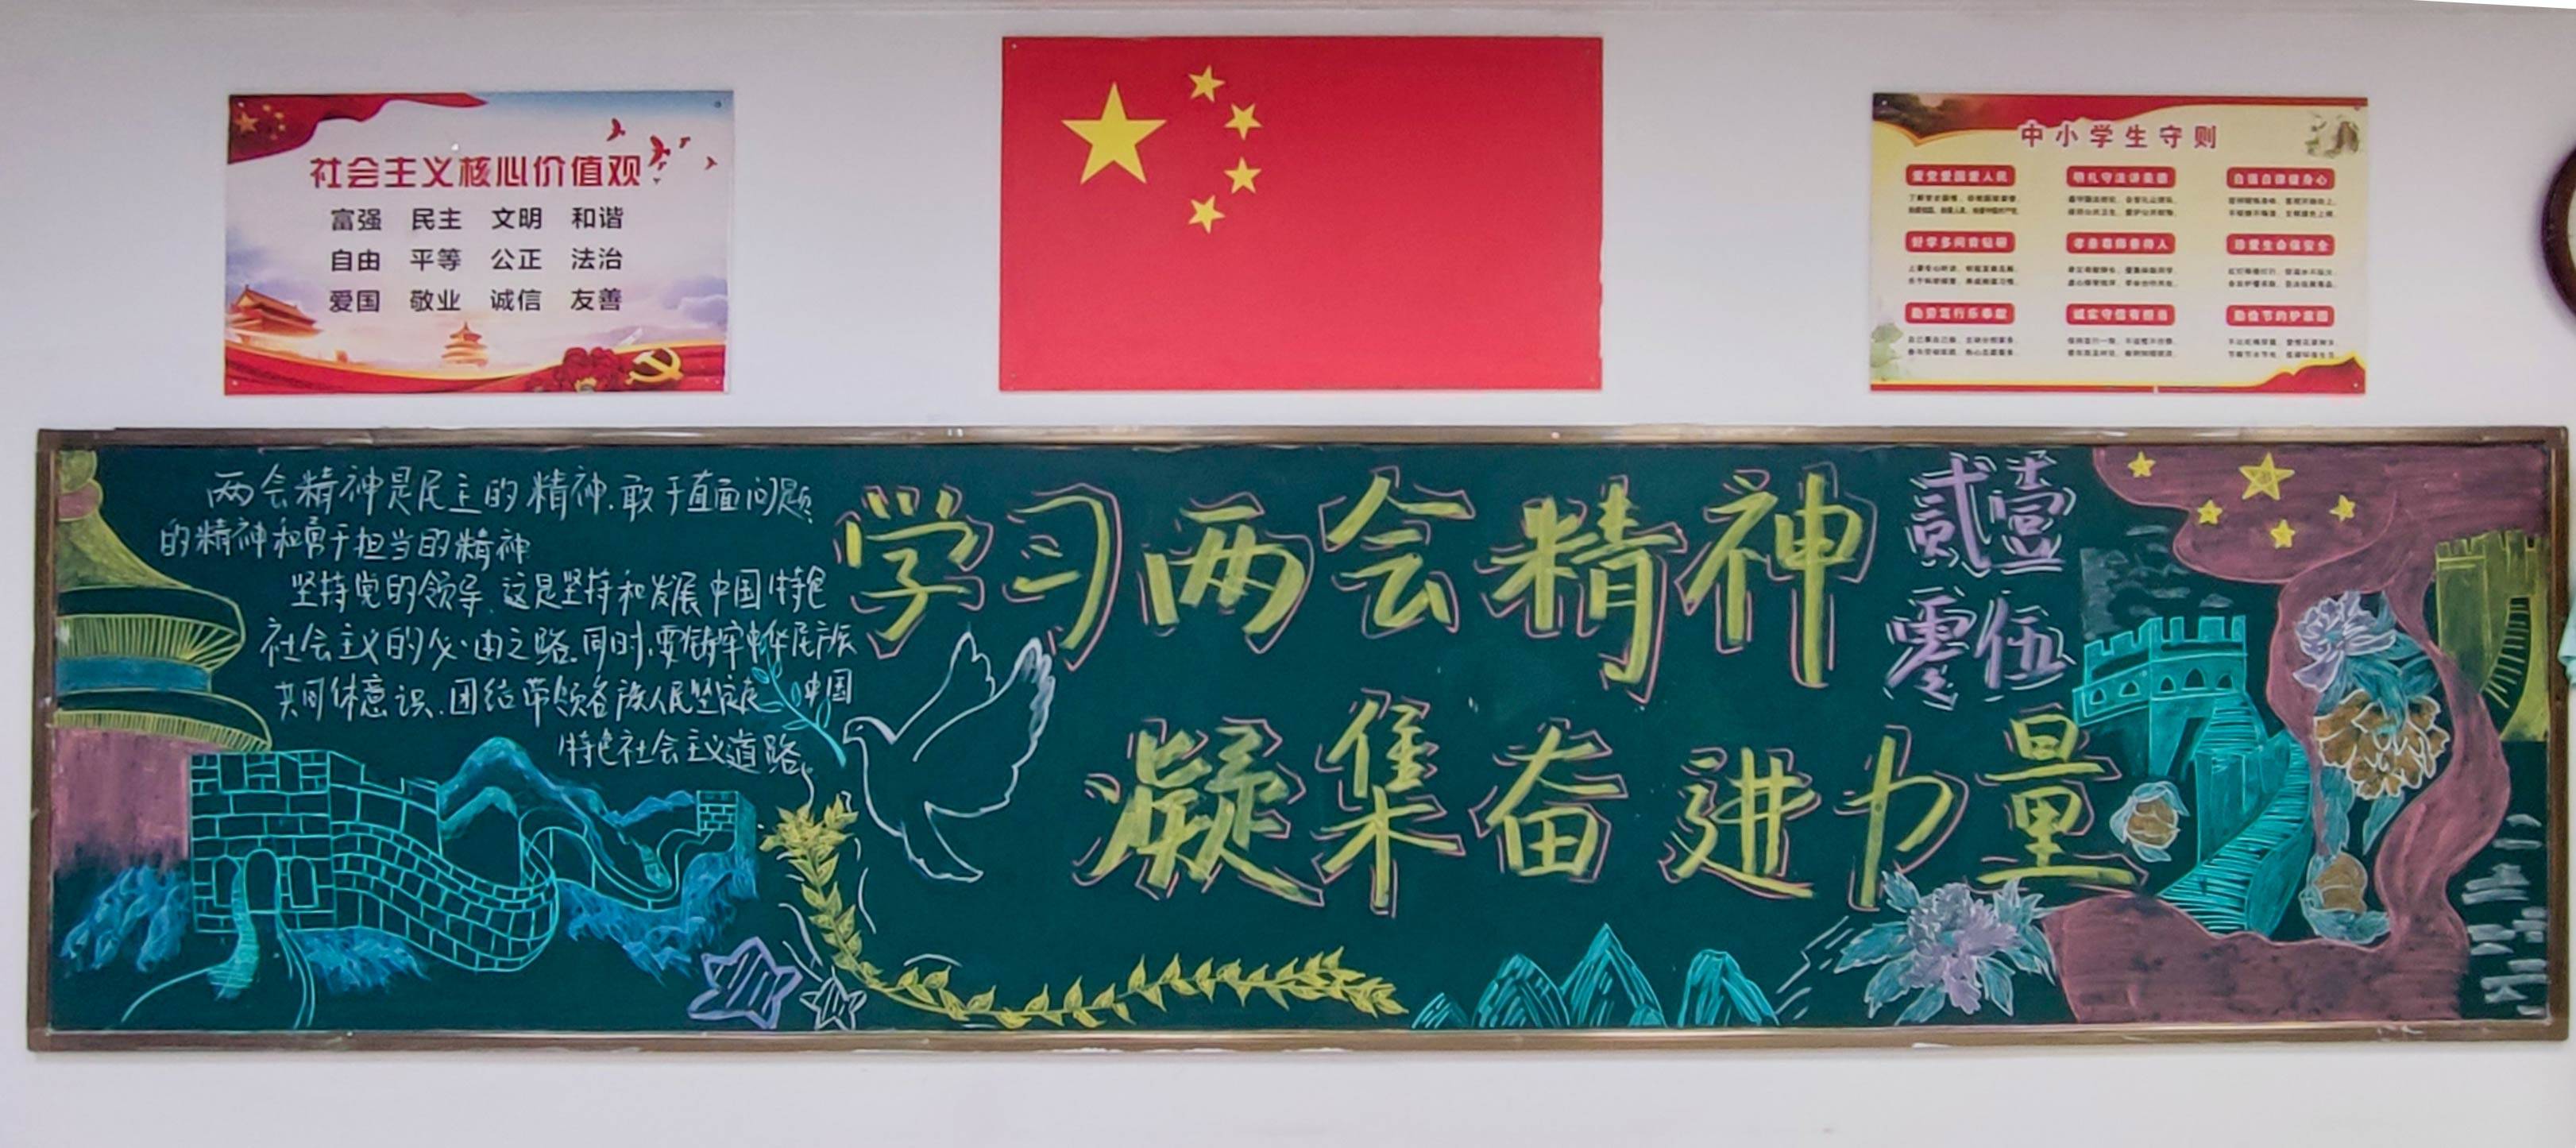 郑州十中开展"我眼中的全国两会"主题黑板报展示活动